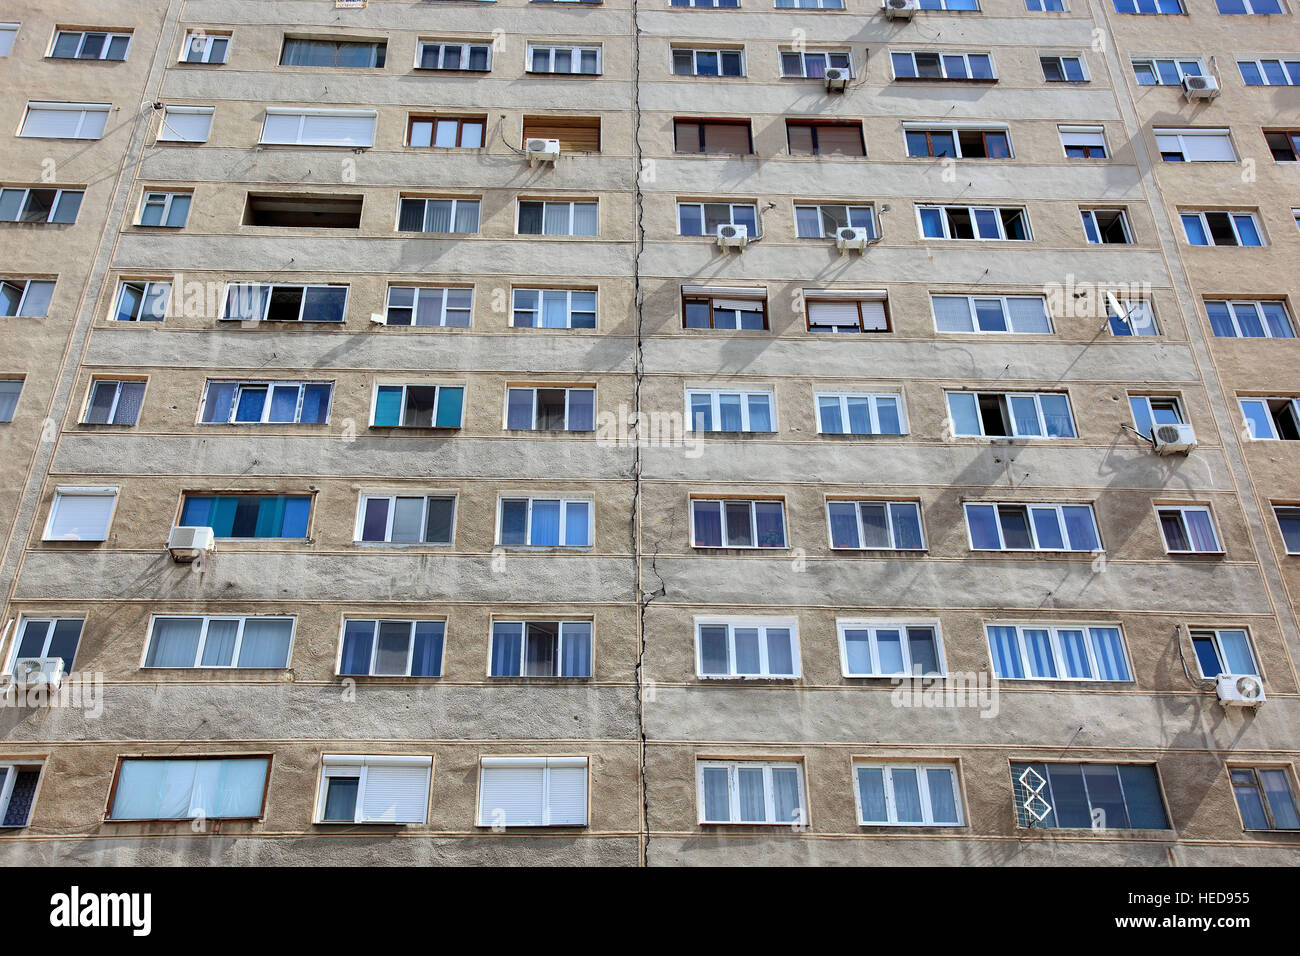 Rumänien, Kleine Walachei, Stadt Drobeta Turnu Severin, Gebäude, Plattenbau, Wohnhaus Stock Photo